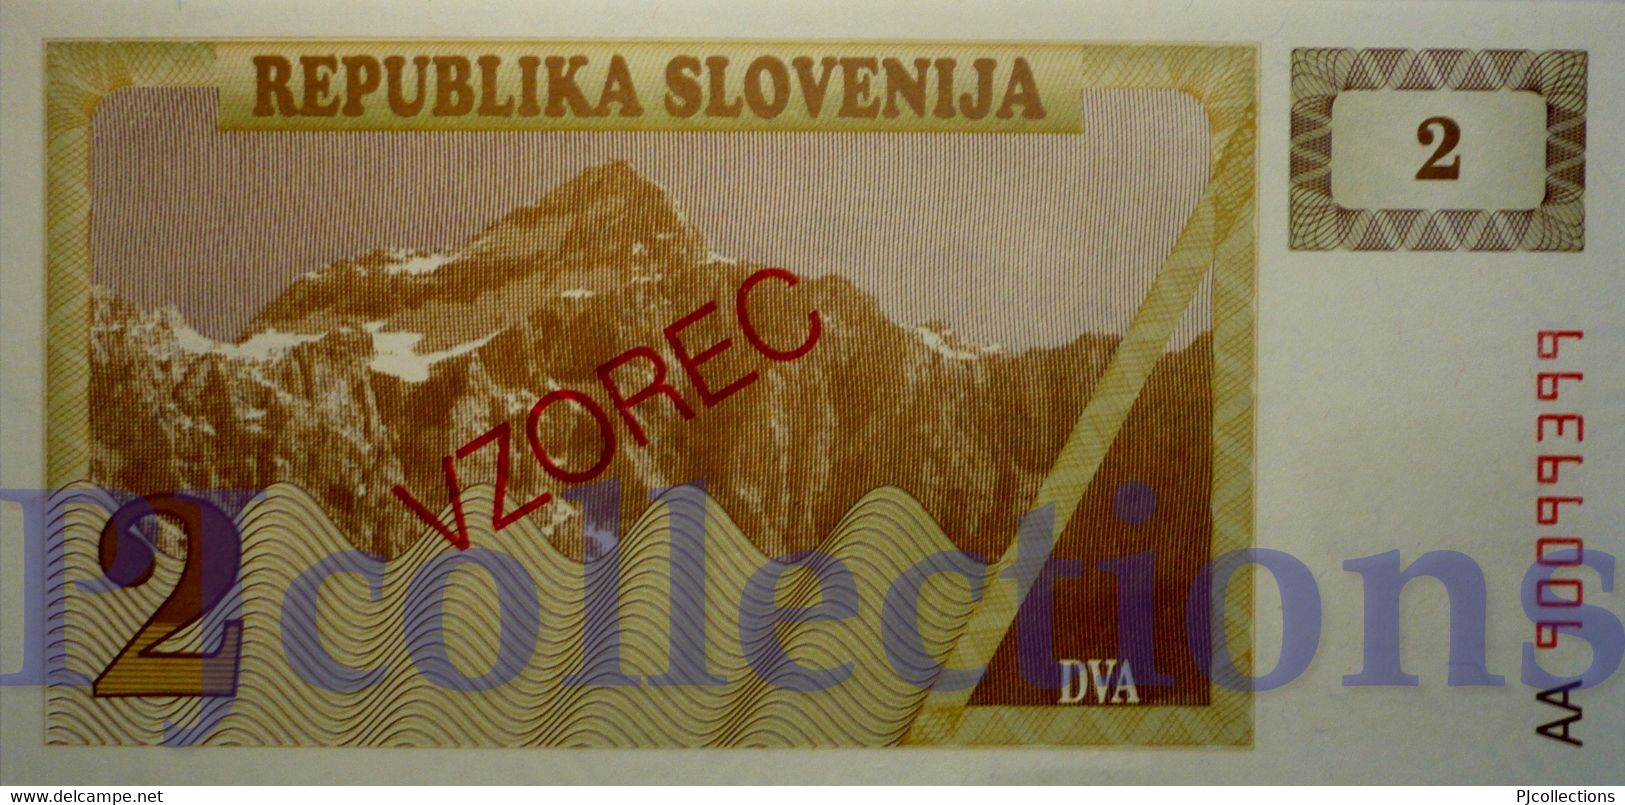 SLOVENIA 2 TOLARJEV 1990 PICK 2s1 SPECIMEN UNC - Slovénie